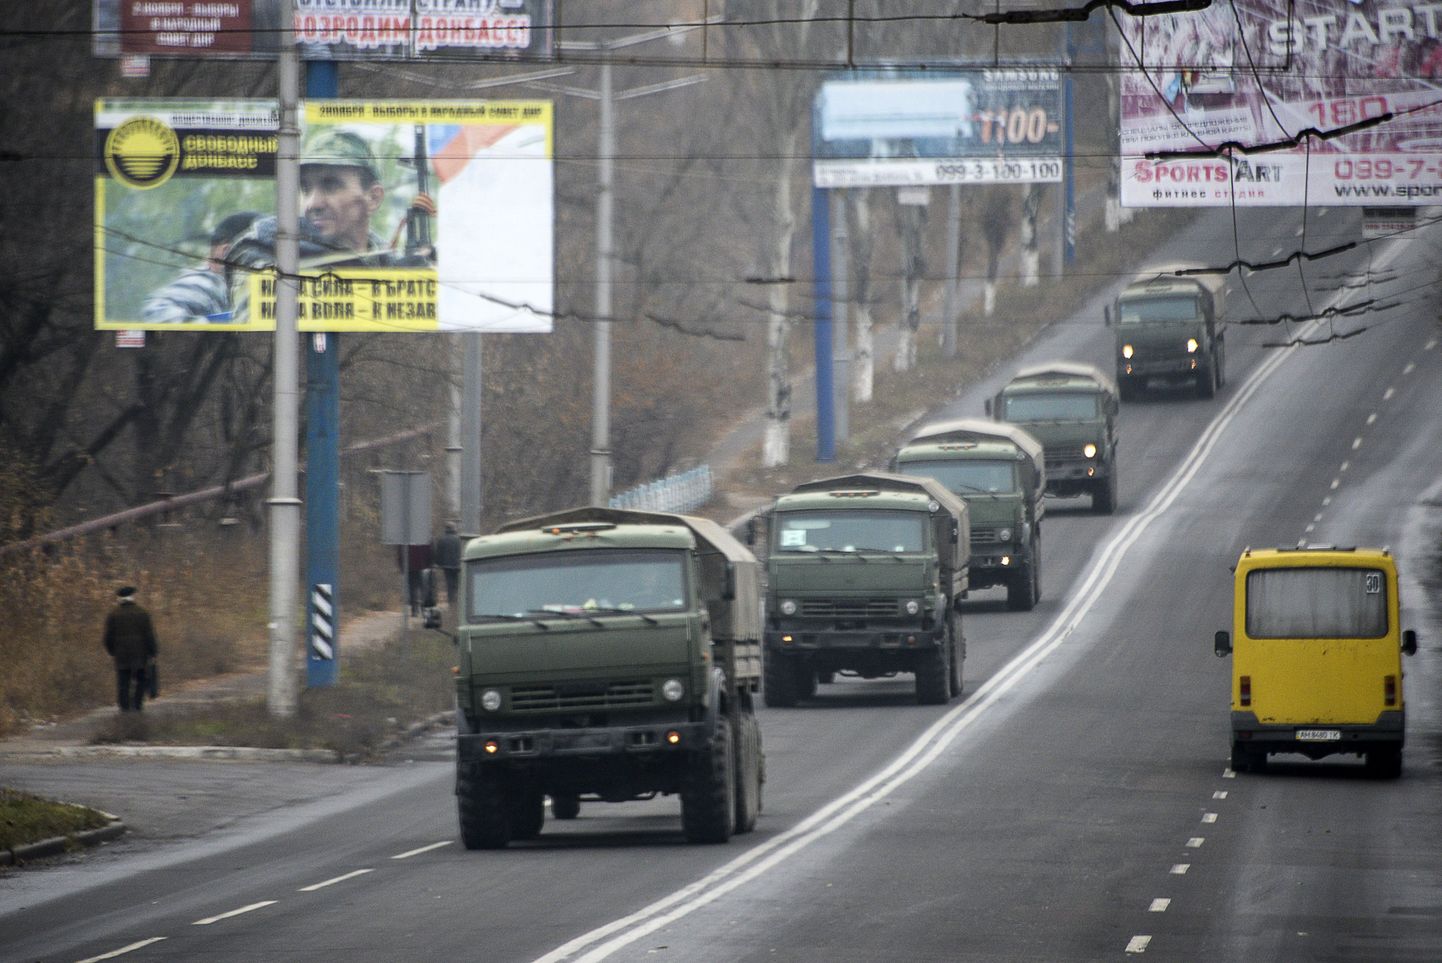 Замеченная ОБСЕ под Донецком колонна военной техники принадлежит ДНР, заявил Эдуард Басурин.